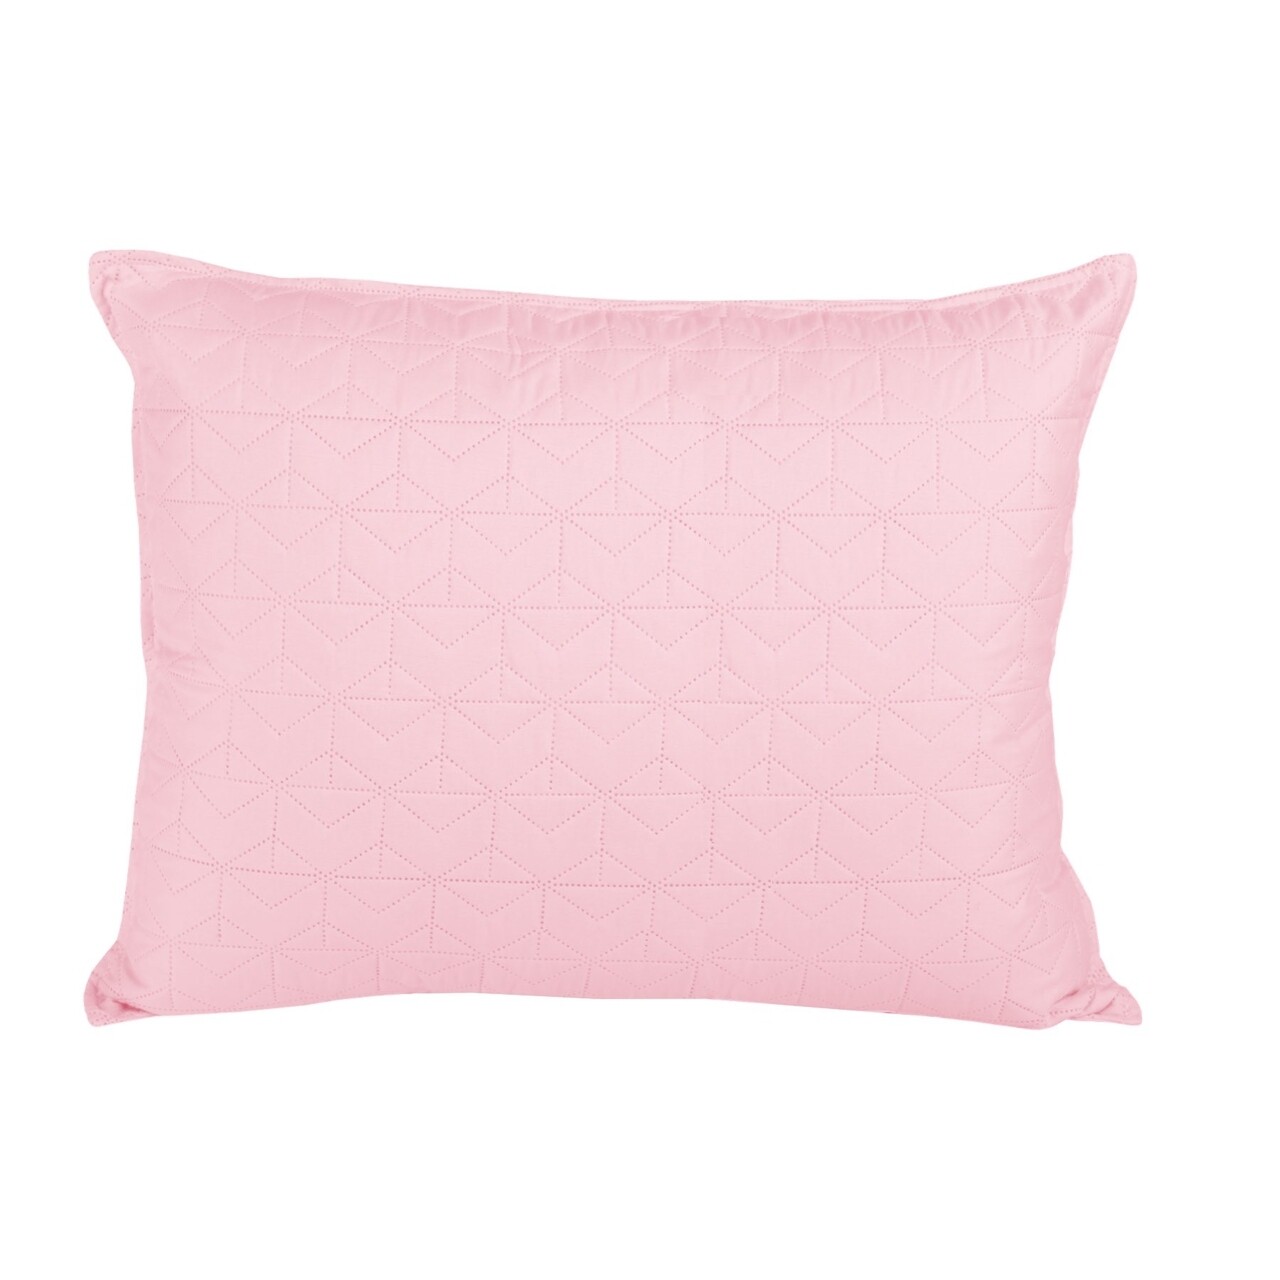 Puder Párnahuzat, Fashion Goods, 30x50 cm, mikroszál, rózsaszín